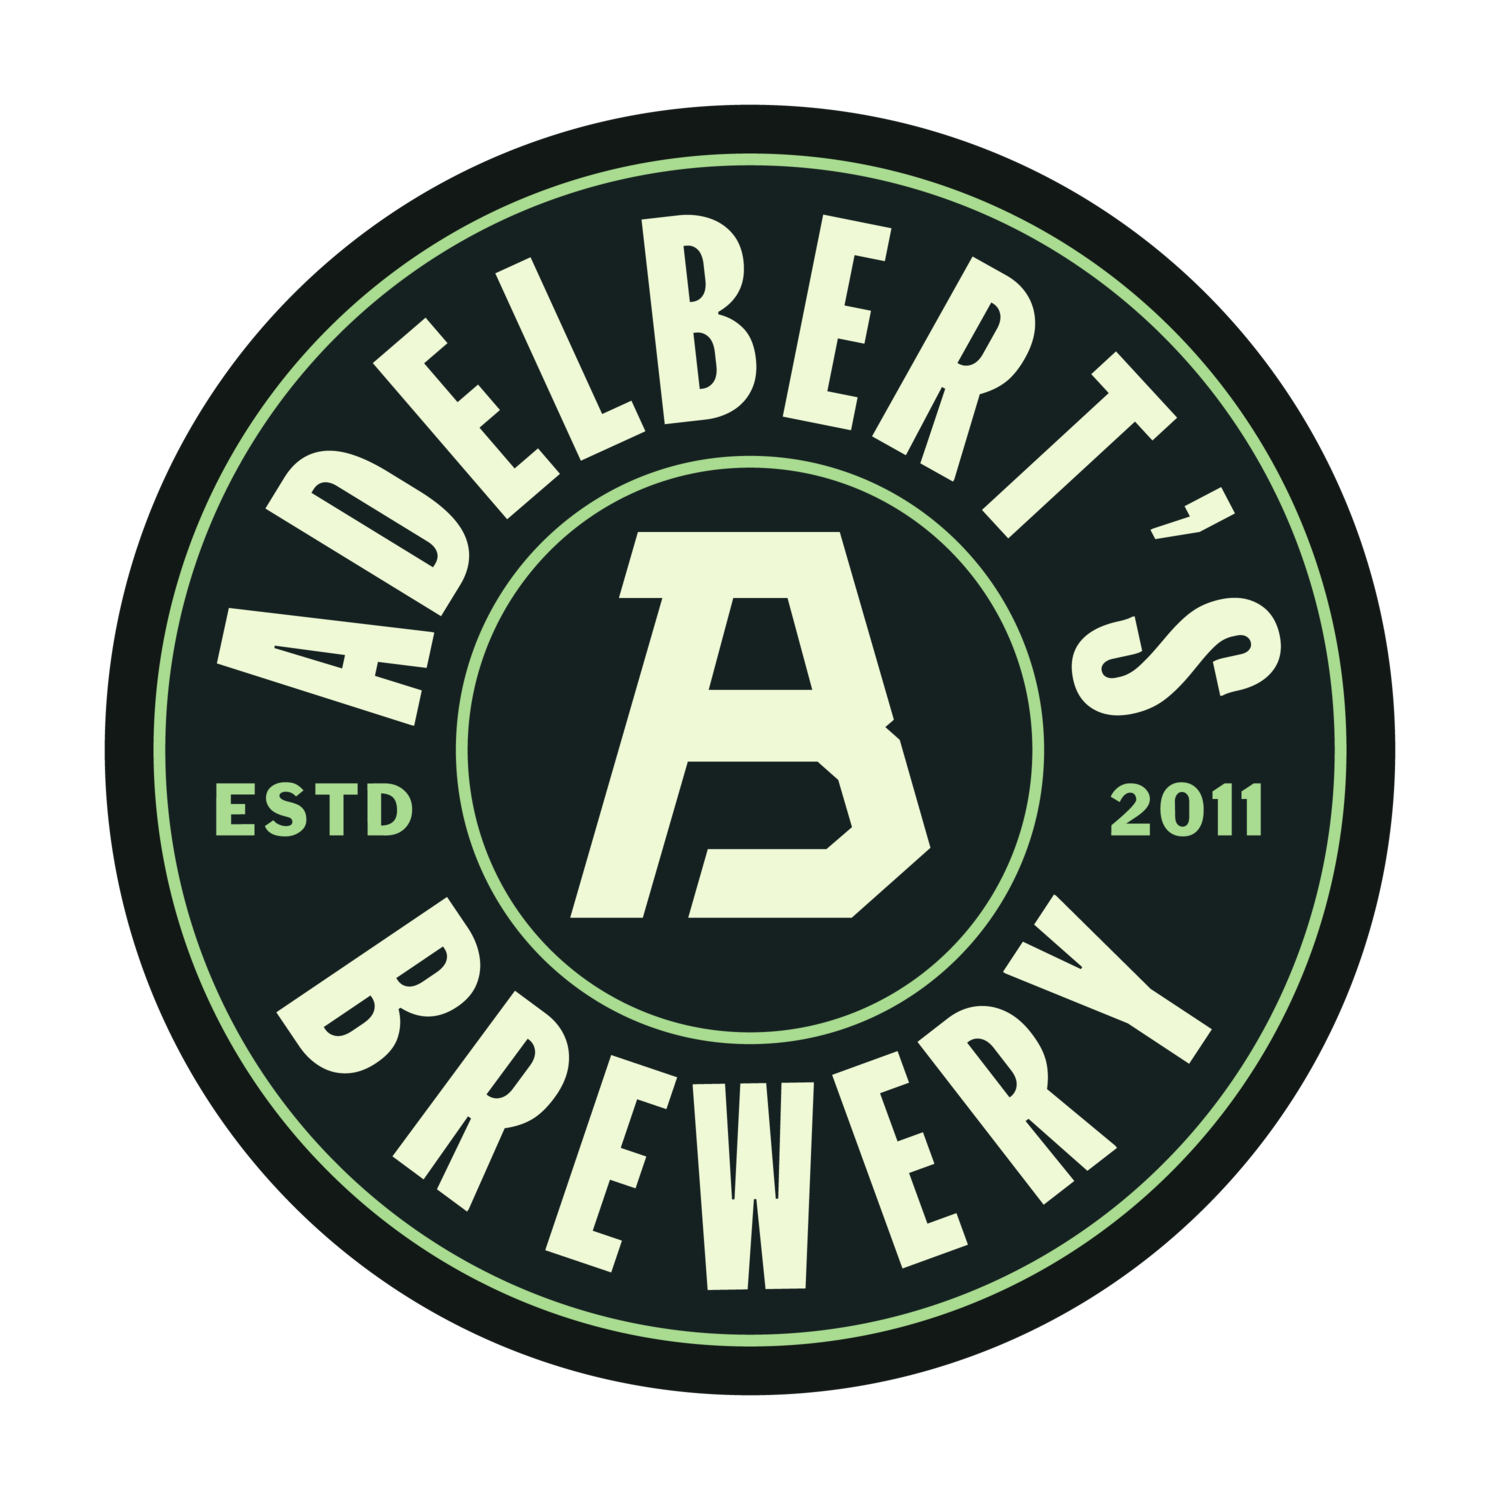 Brewery & Taproom — Adelbert's Beer